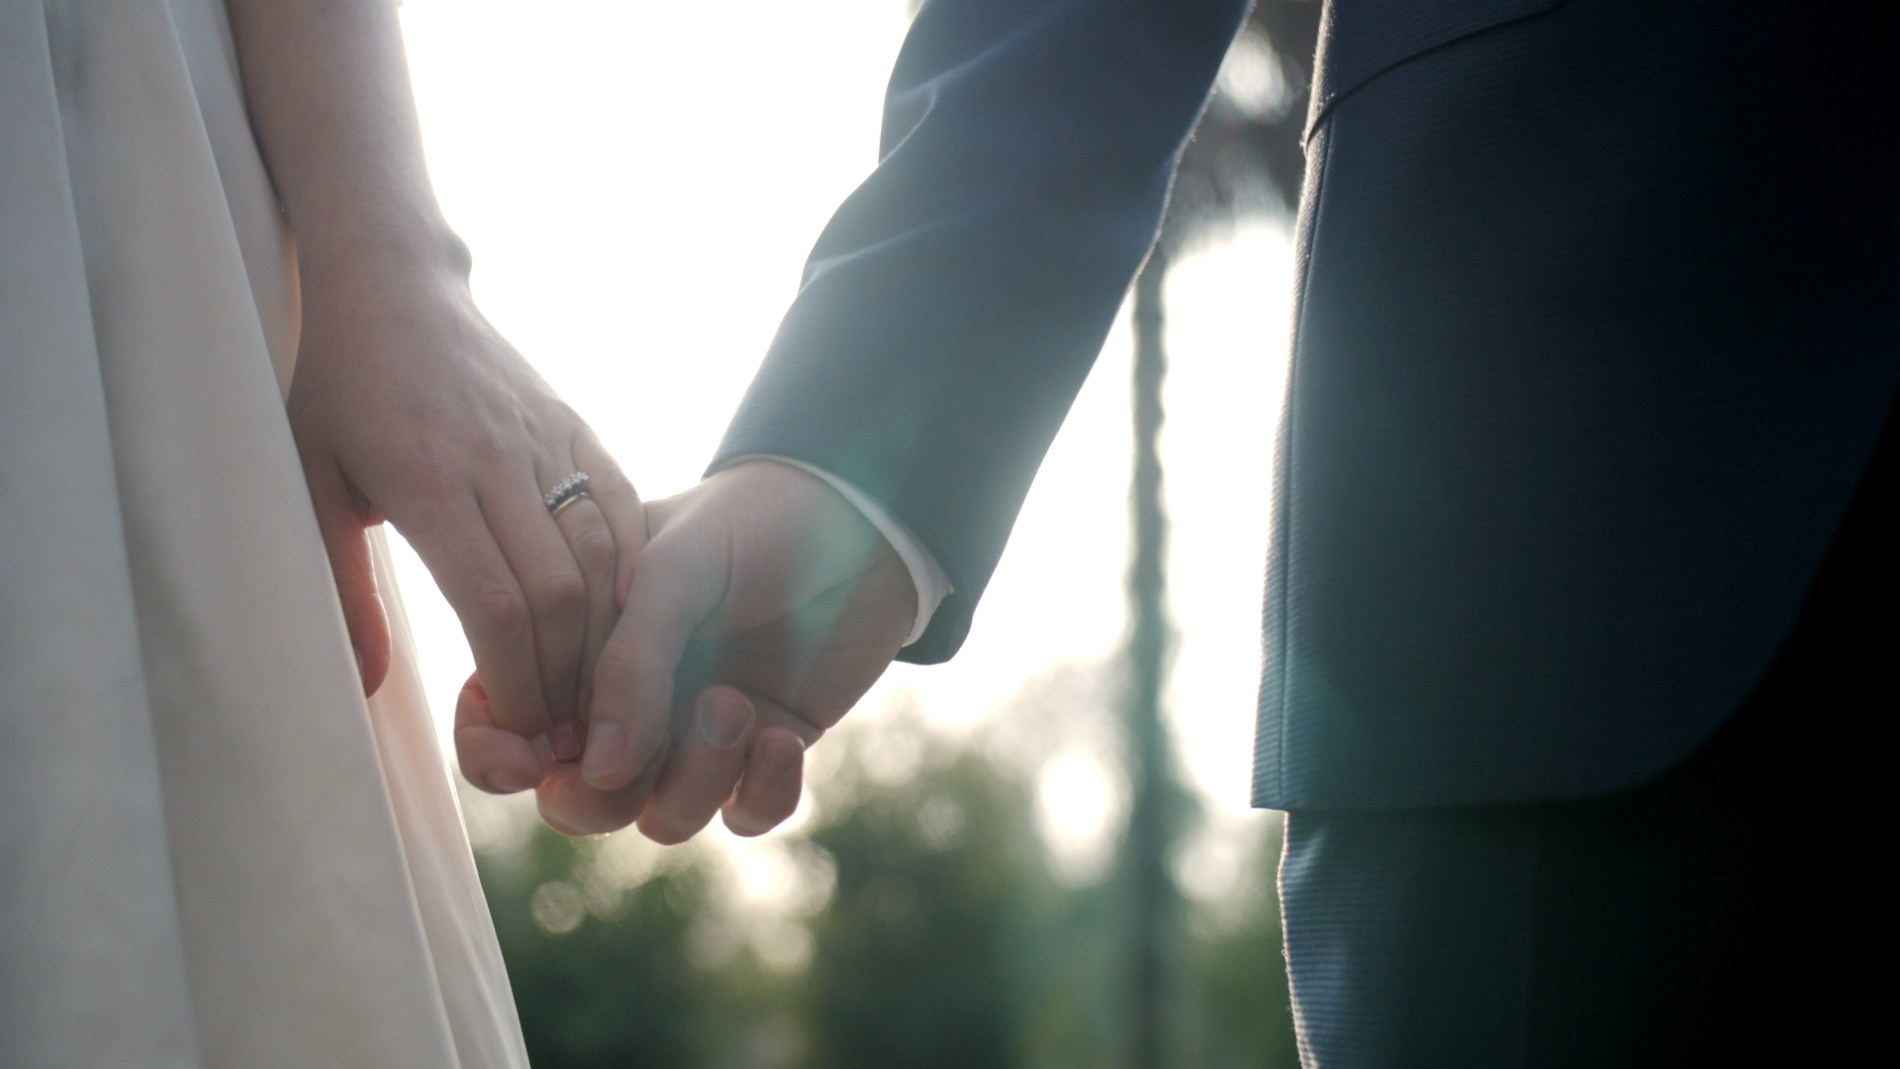 Fran & Massimo - Matrimonio en Casona Parque Nos - Video de matrimonio por Ampersand Wedding Films